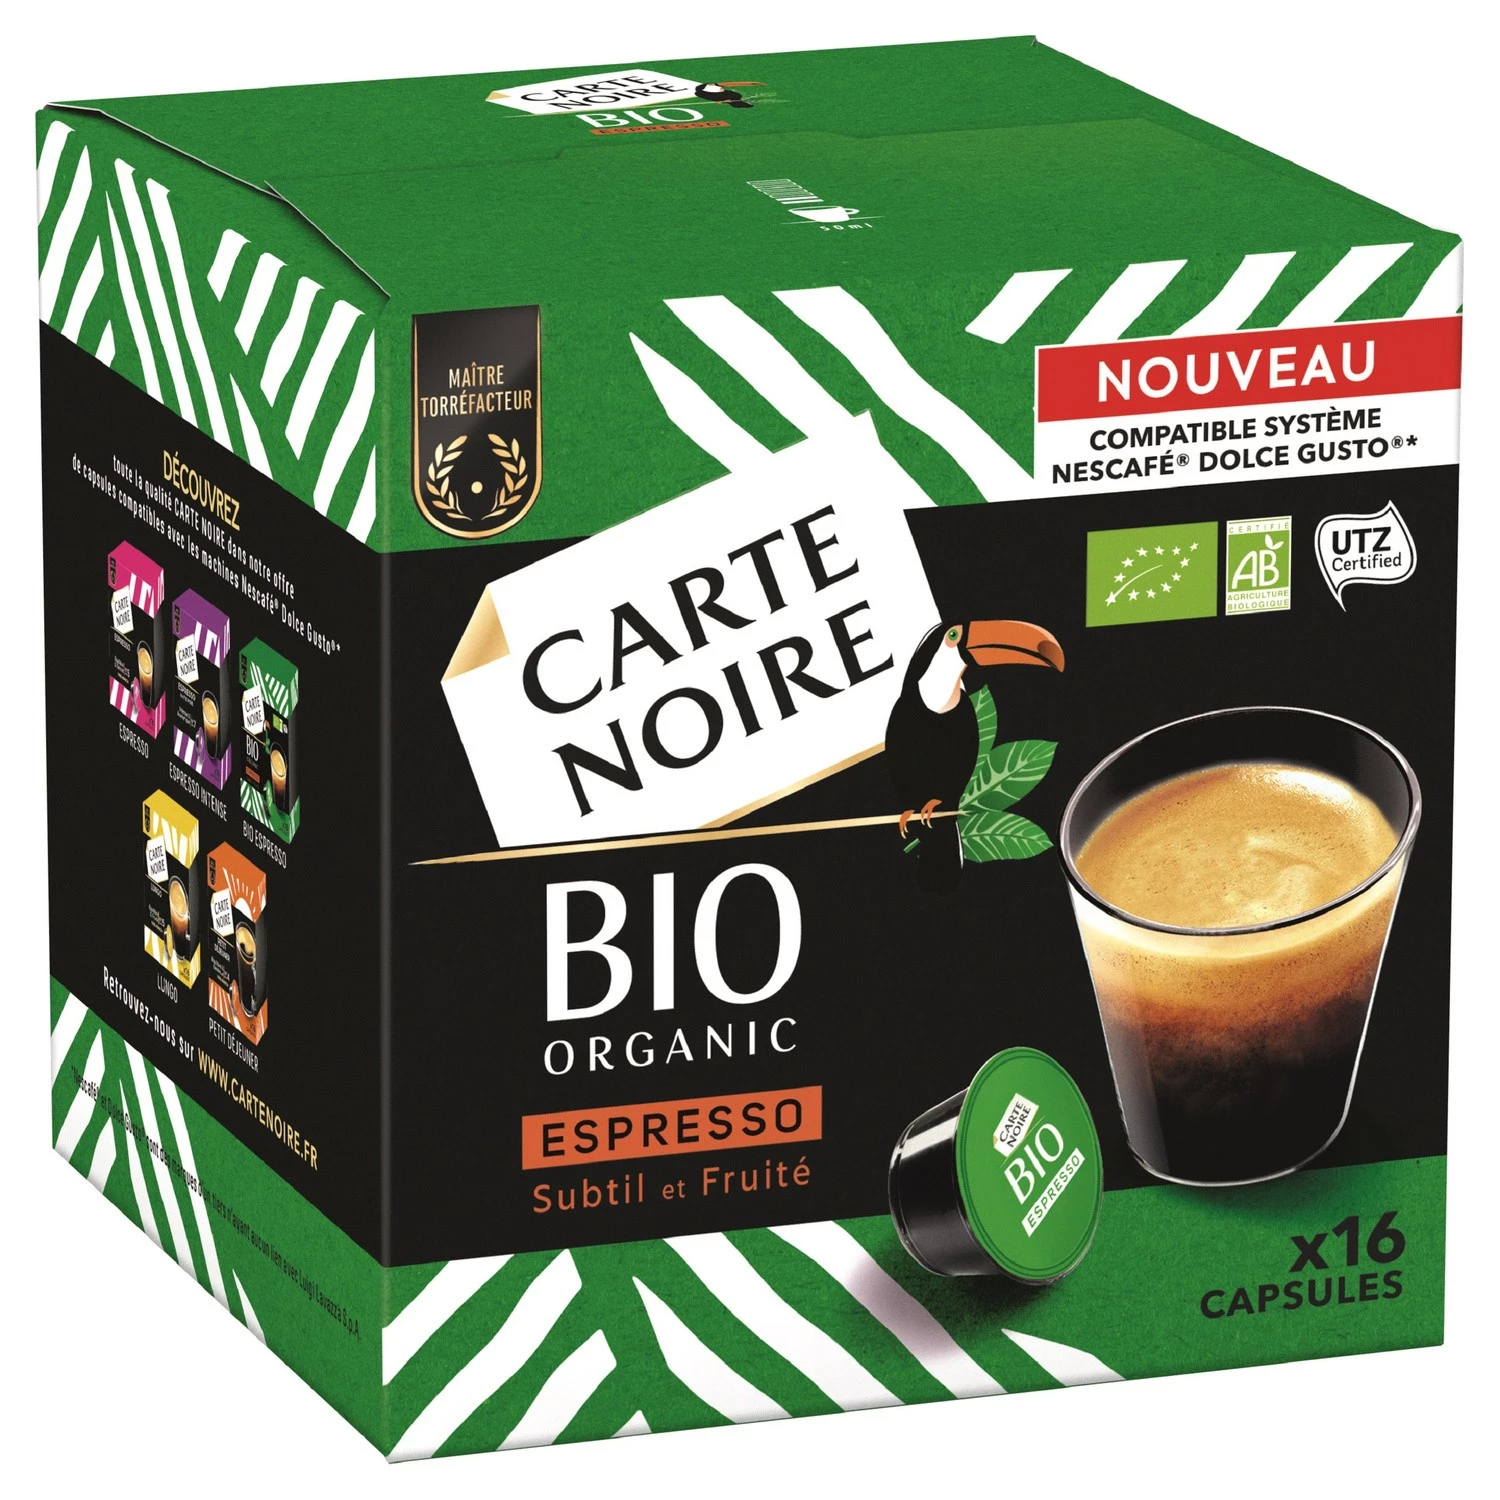 Café espresso subtil & fruité Bio x16 capsules 128g - CARTE NOIRE